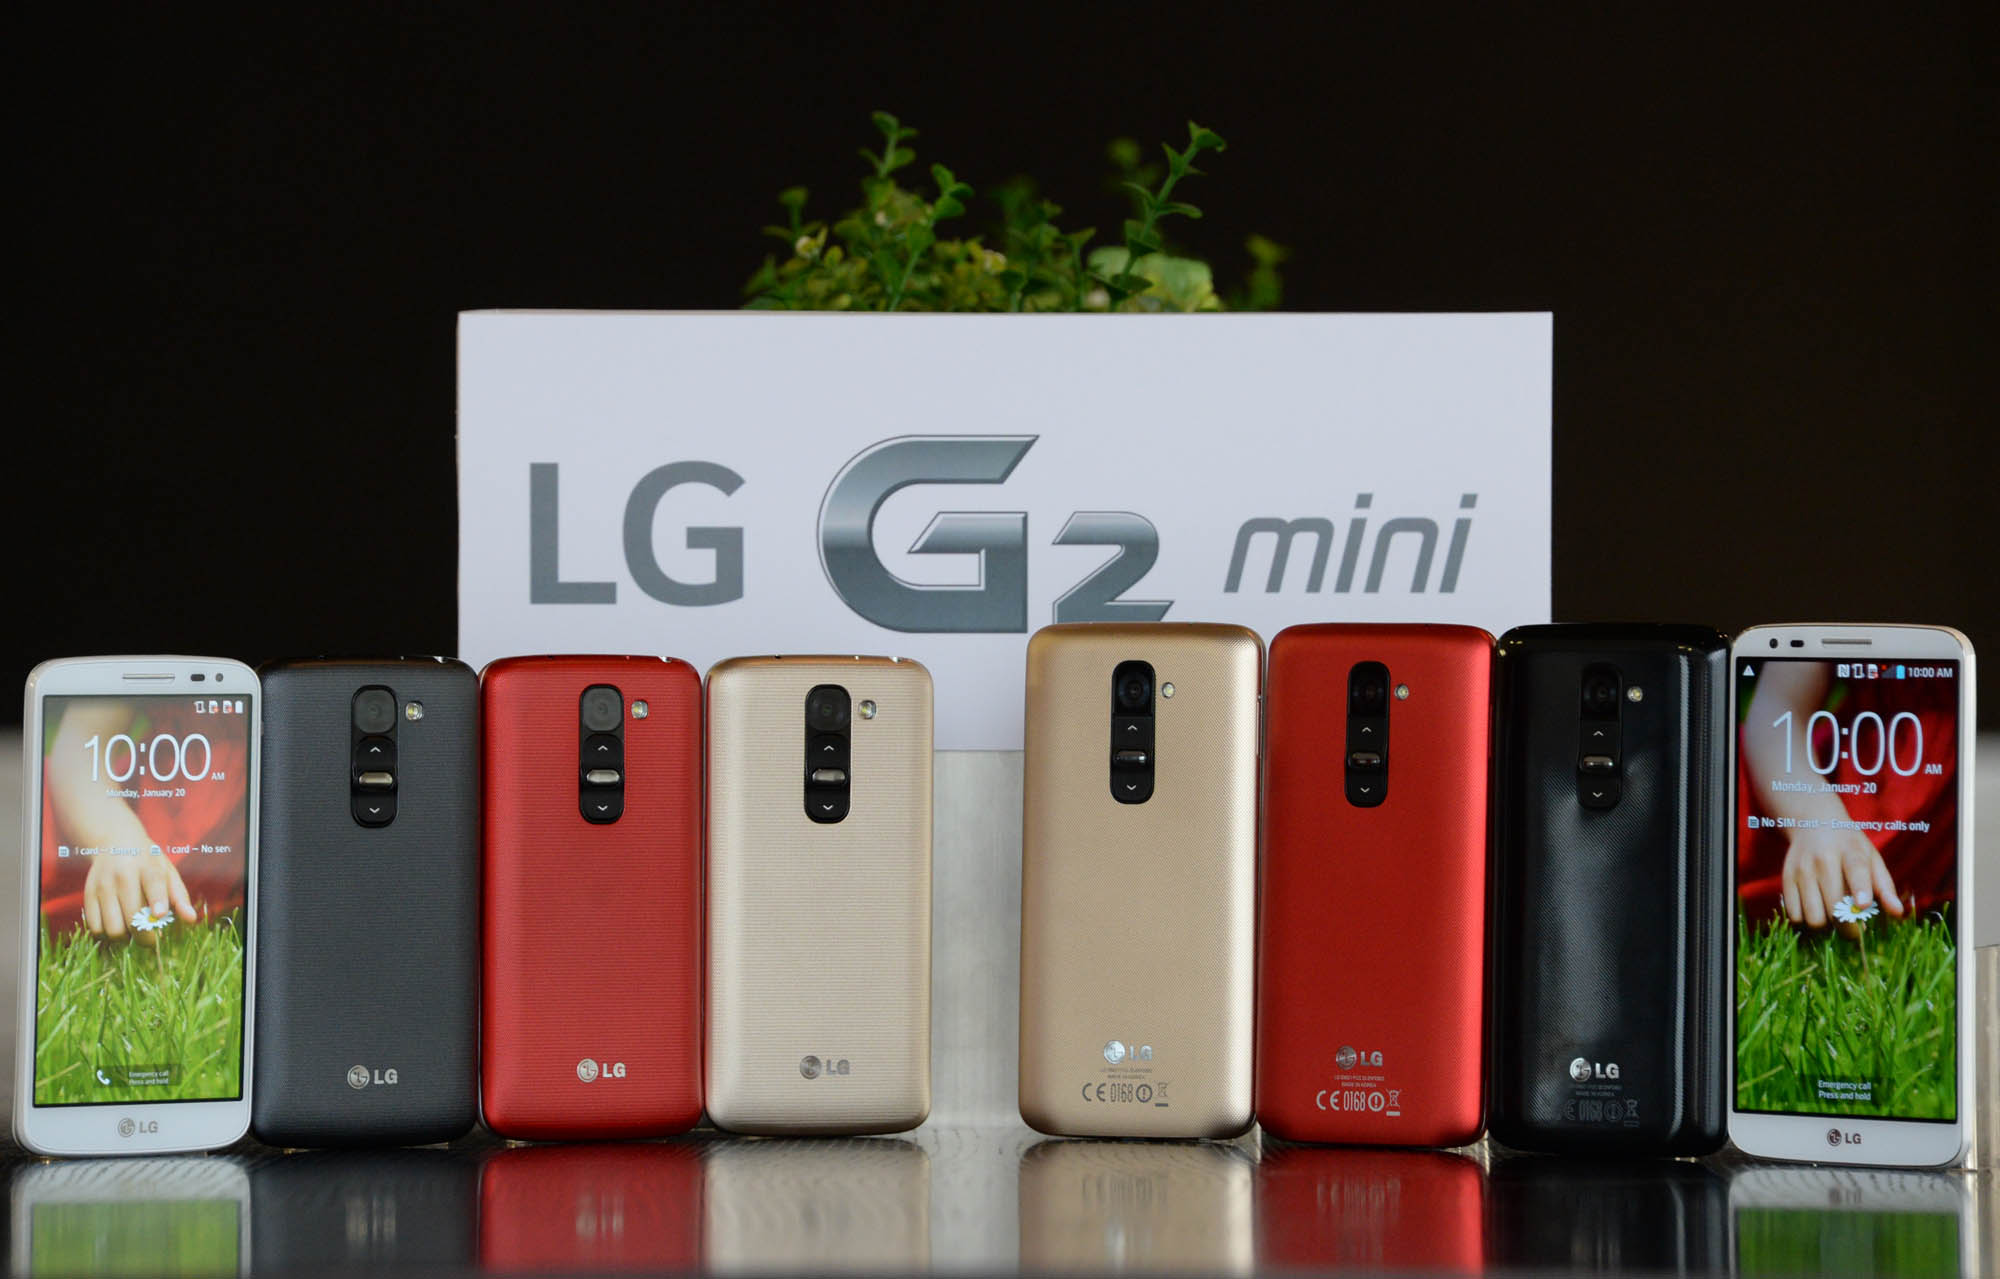 Com tela de 4,7 polegadas, LG G2 mini é oficial